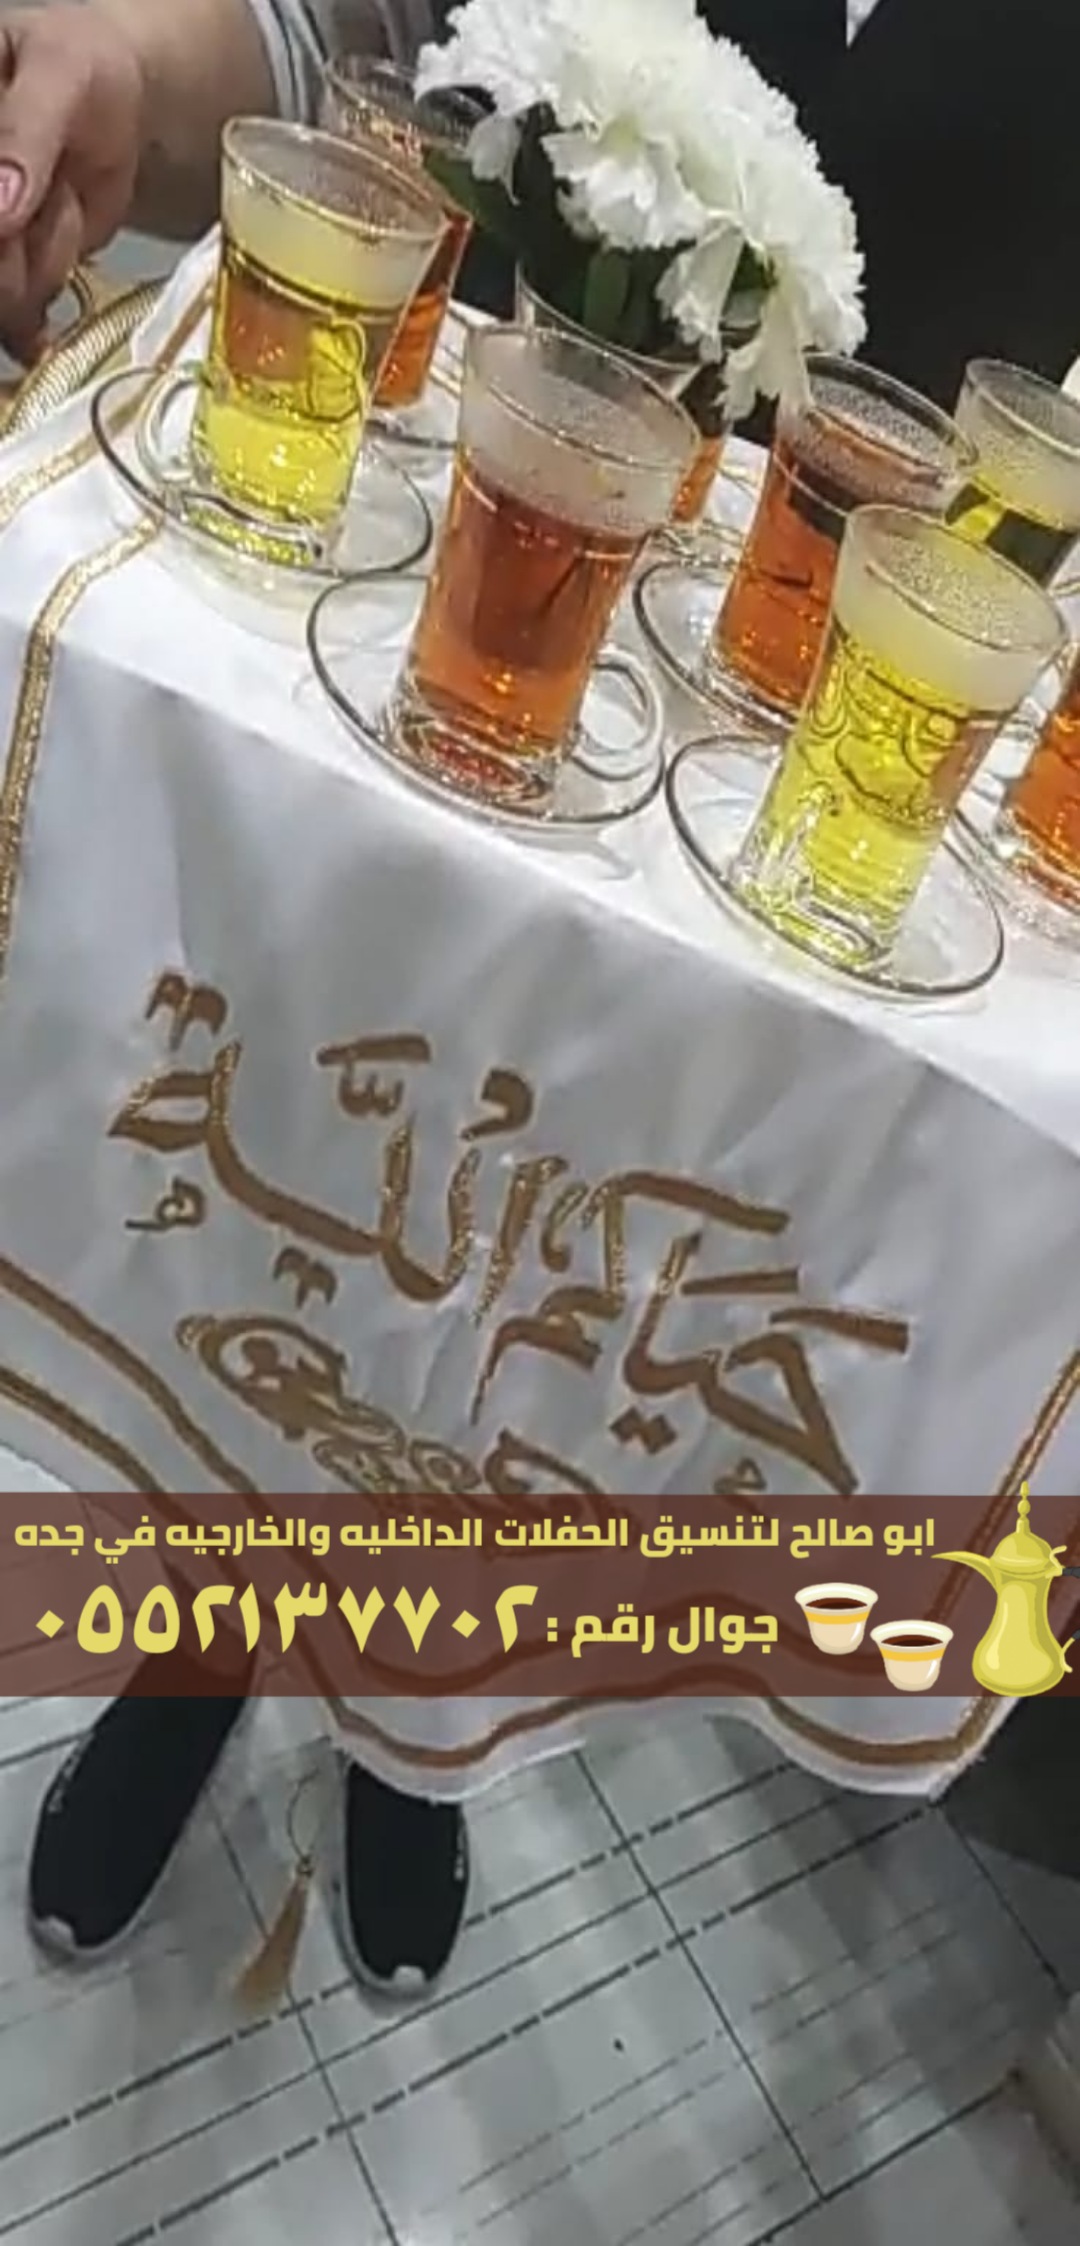 صبابين قهوة و صبابات في جدة, 0552137702 P_24561ogj81